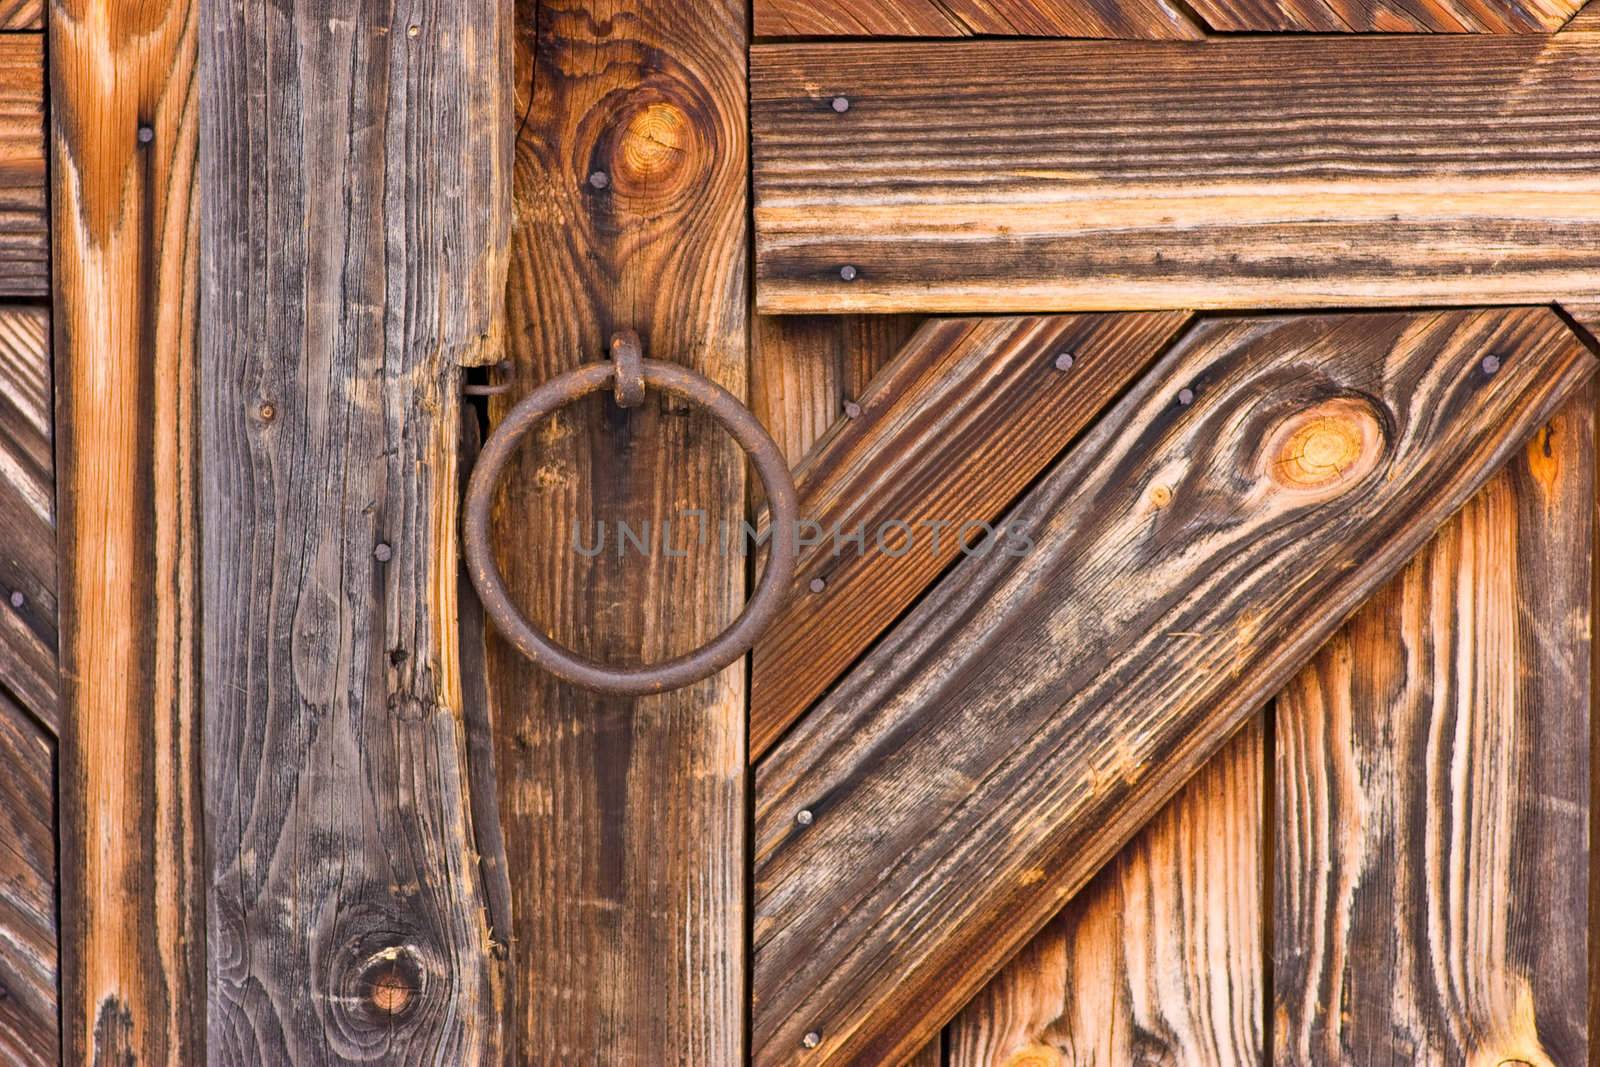 Rustic wooden barn door with metal handle